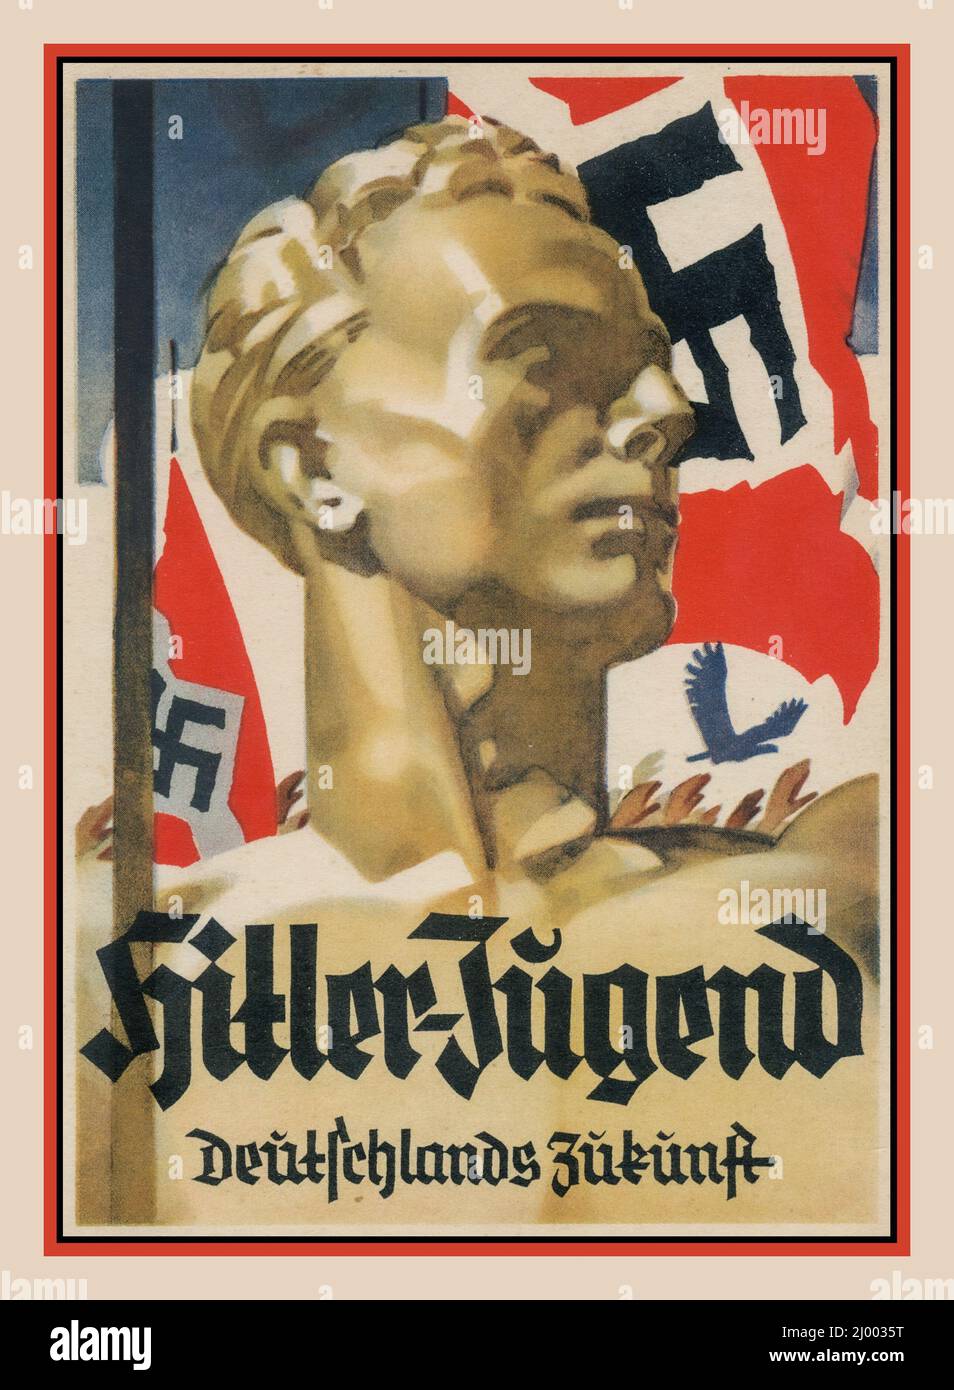 Nazista Hitler-Jugend 1930s Germania nazista Hitler Youth Propaganda poster con bandiera Swastika e intitolato HITLER-JUGEND Deutschlands Zukunft, il futuro della Germania. La gioventù bionda di aryan si presenta come l'ideale perfetto della Germania nazista Foto Stock